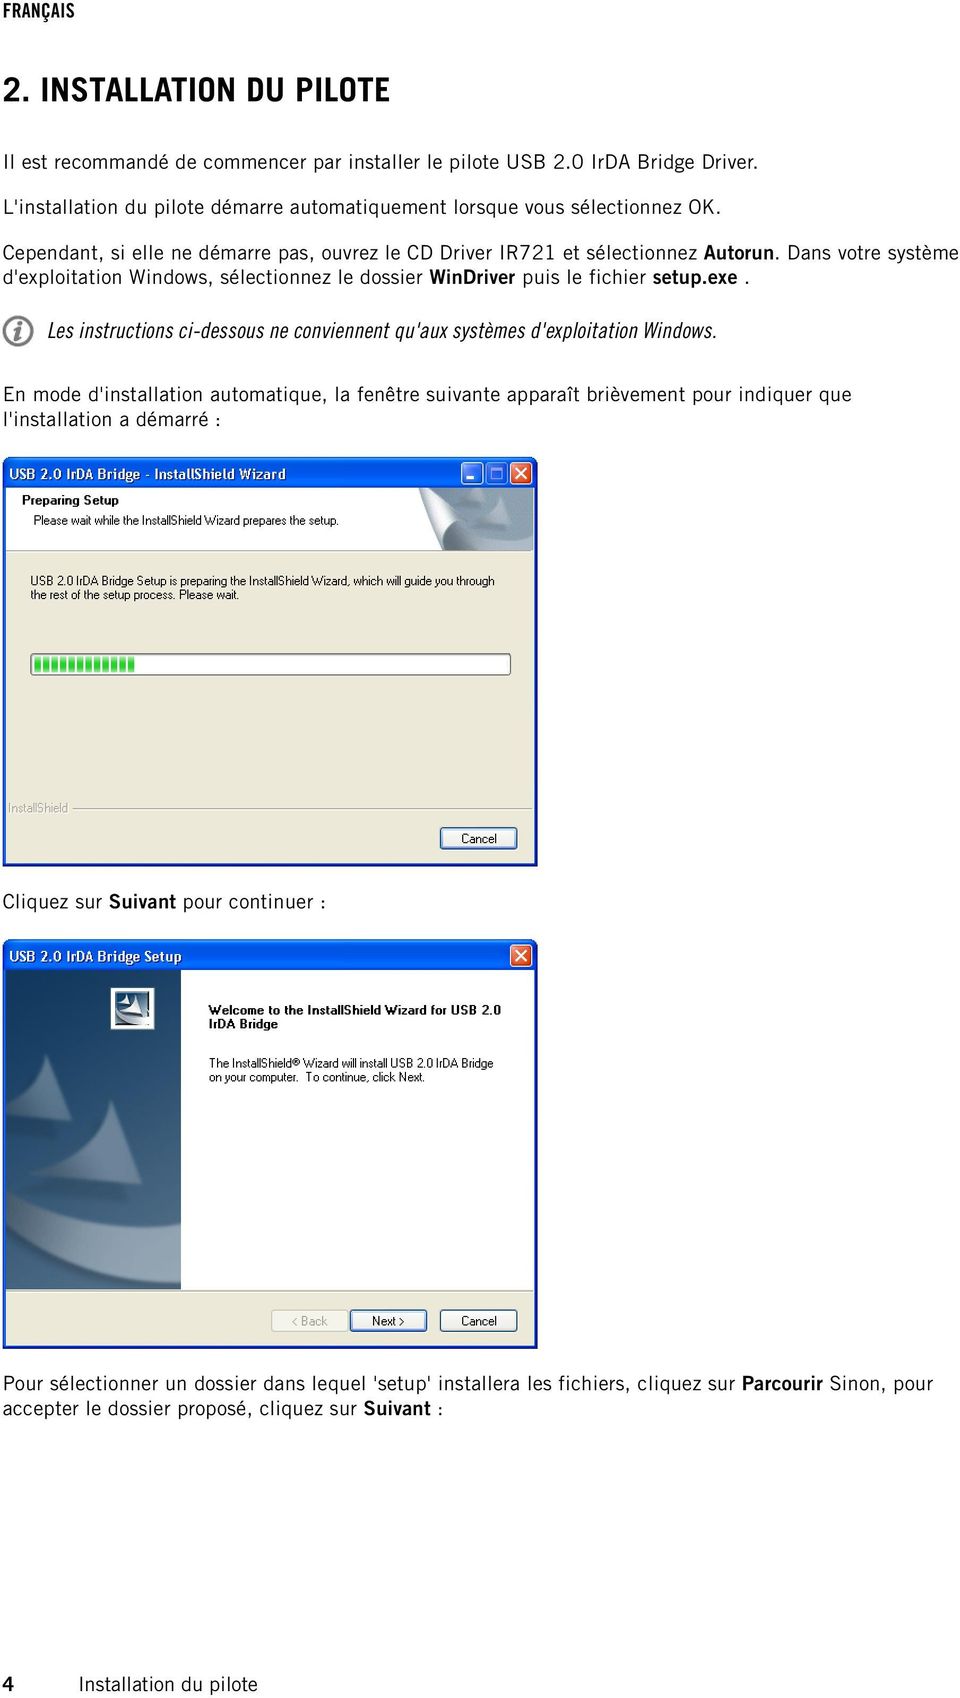 Les instructions ci-dessous ne conviennent qu'aux systèmes d'exploitation Windows.